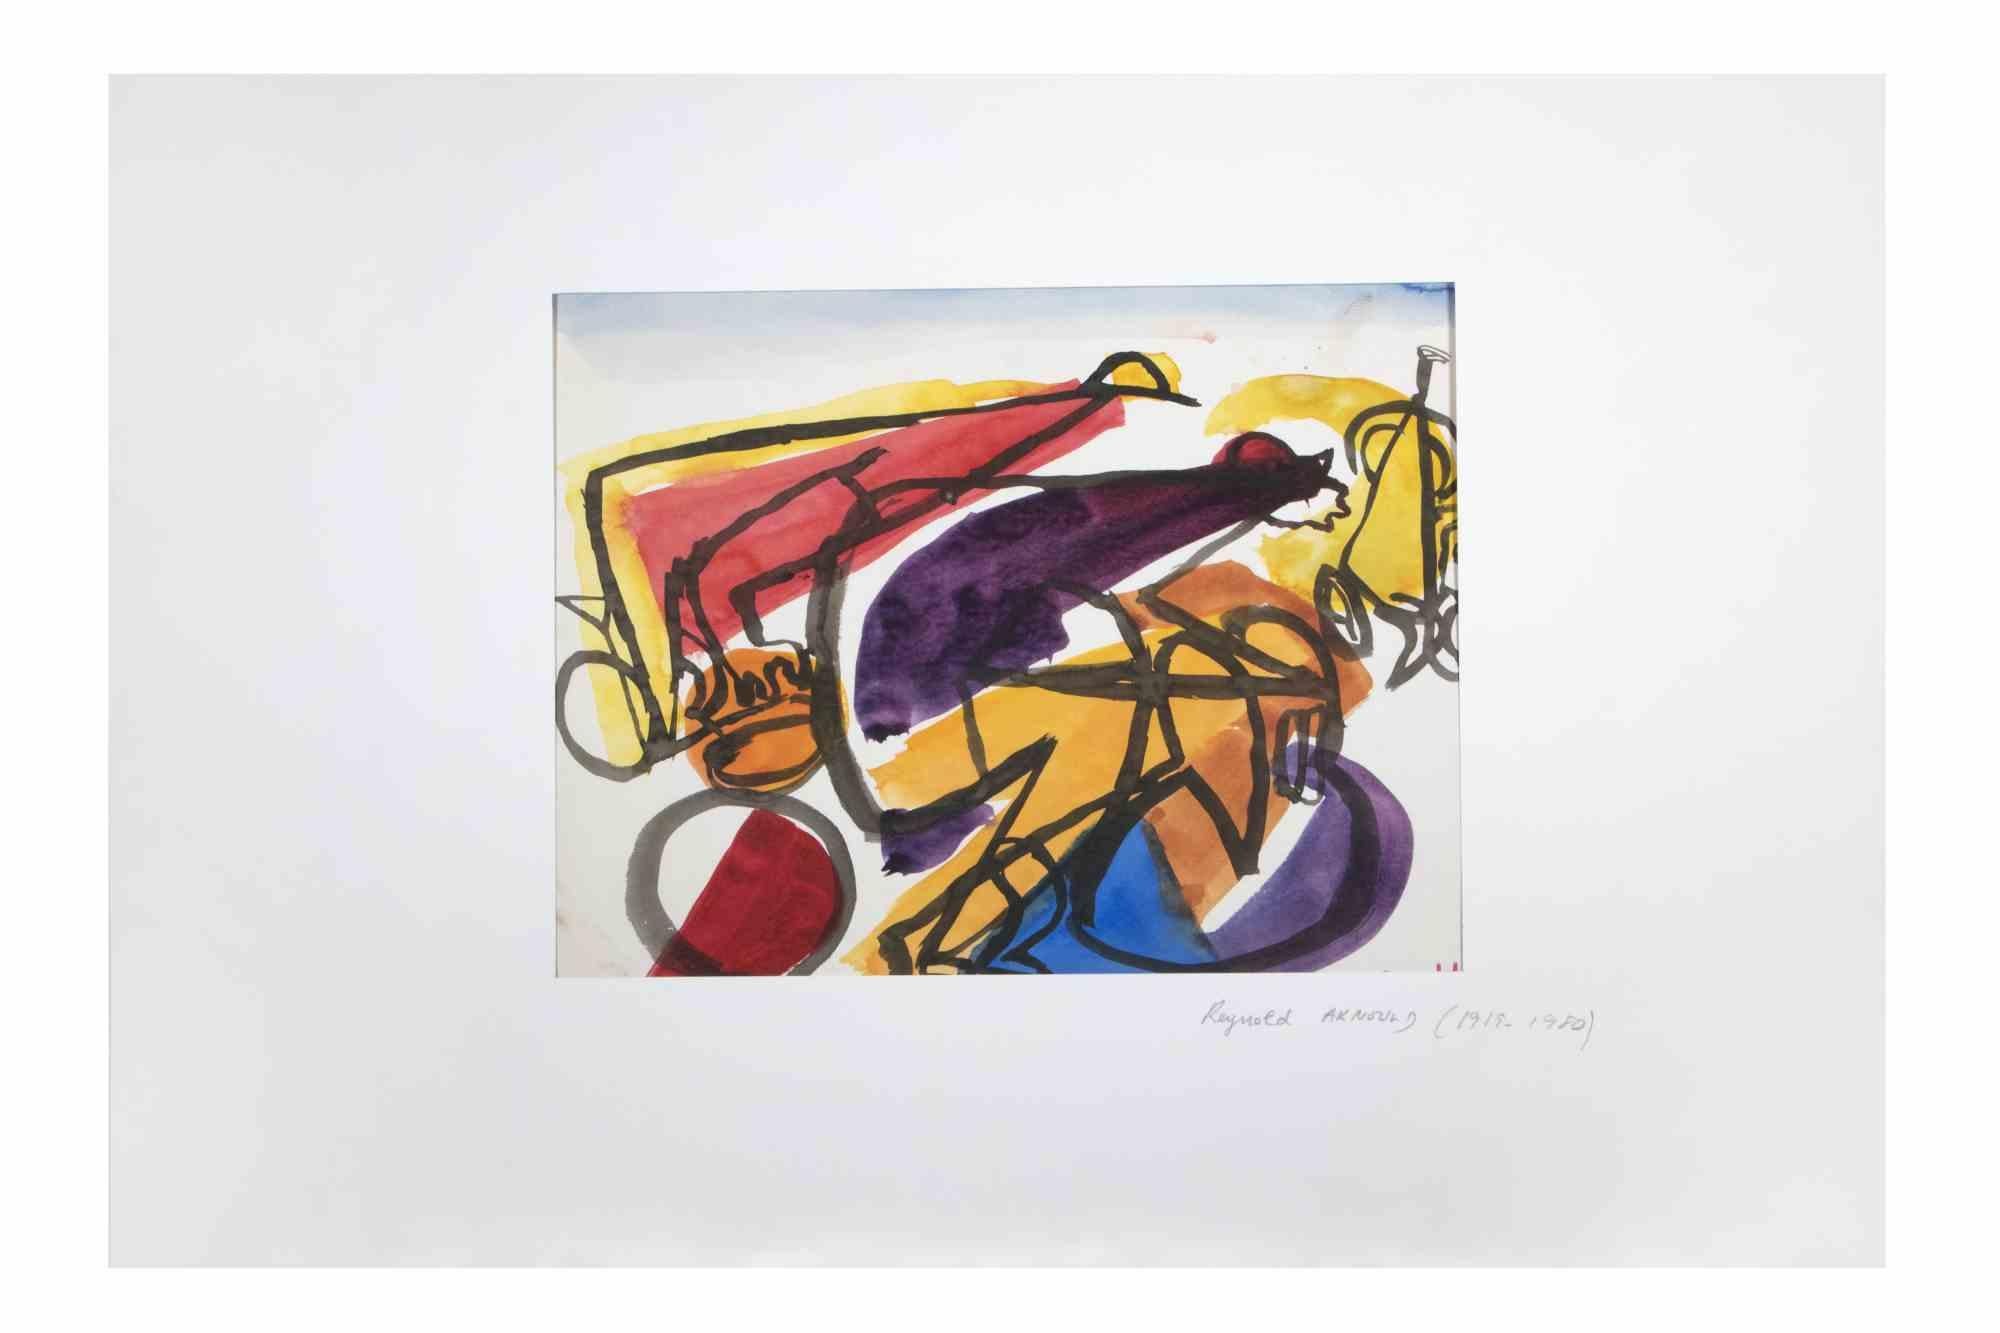 Abstrakte Komposition ist ein Aquarell Kunstwerk von Reynold Arnould realisiert  (Le Havre 1919 - Parigi 1980) im Jahr 1970.

Guter Zustand, einschließlich eines Passpartouts aus weißem Karton (35x51 cm).

Handsigniert vom Künstler in der rechten